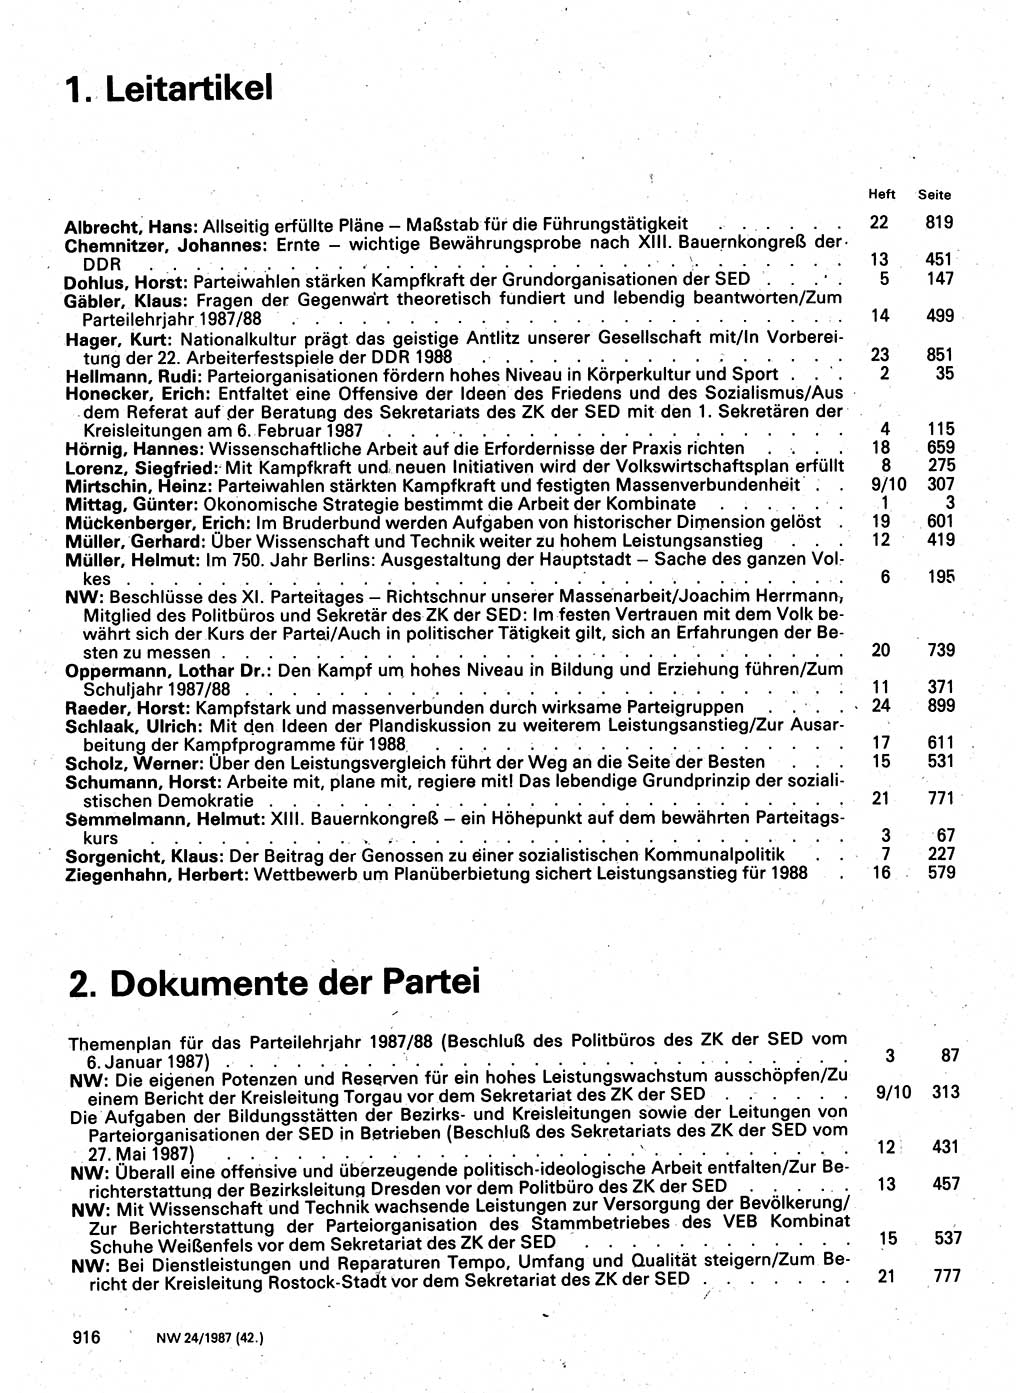 Neuer Weg (NW), Organ des Zentralkomitees (ZK) der SED (Sozialistische Einheitspartei Deutschlands) für Fragen des Parteilebens, 42. Jahrgang [Deutsche Demokratische Republik (DDR)] 1987, Seite 916 (NW ZK SED DDR 1987, S. 916)